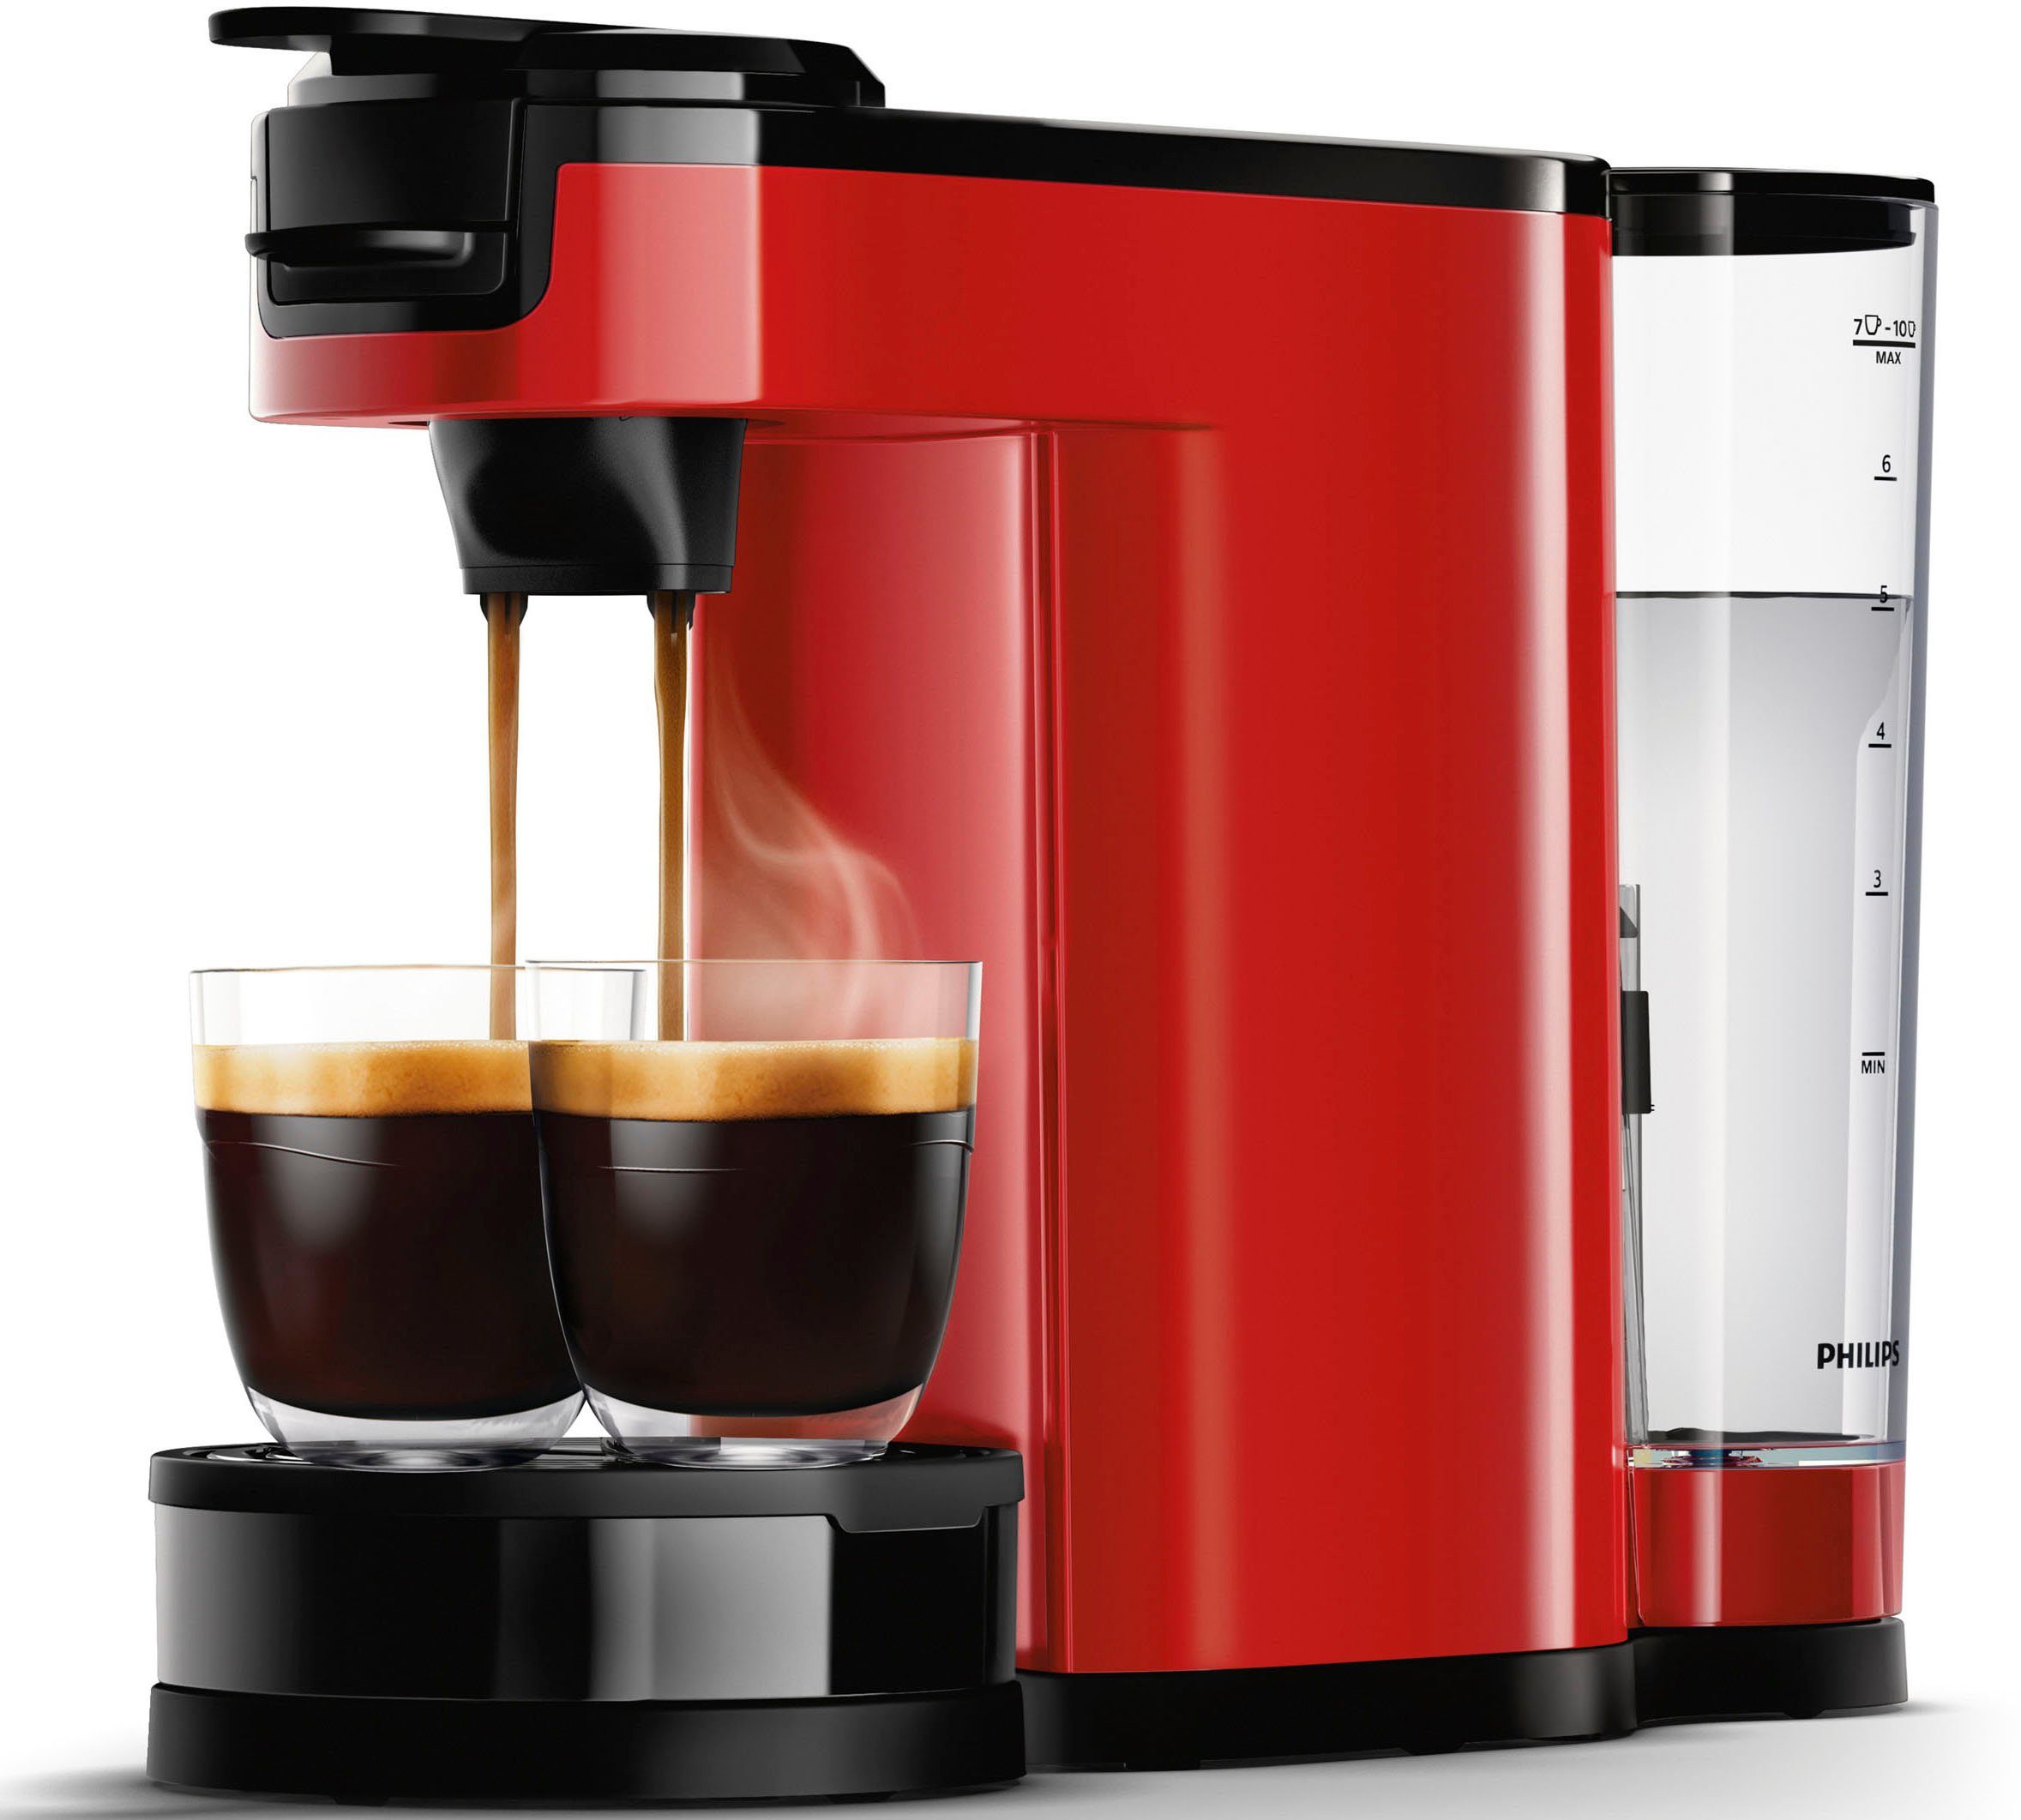 Kaffeepadmaschine Kaffeepaddose Philips Switch inkl. von im 9,90 Wert Senseo € UVP Kaffeekanne, 1l HD6592/84,